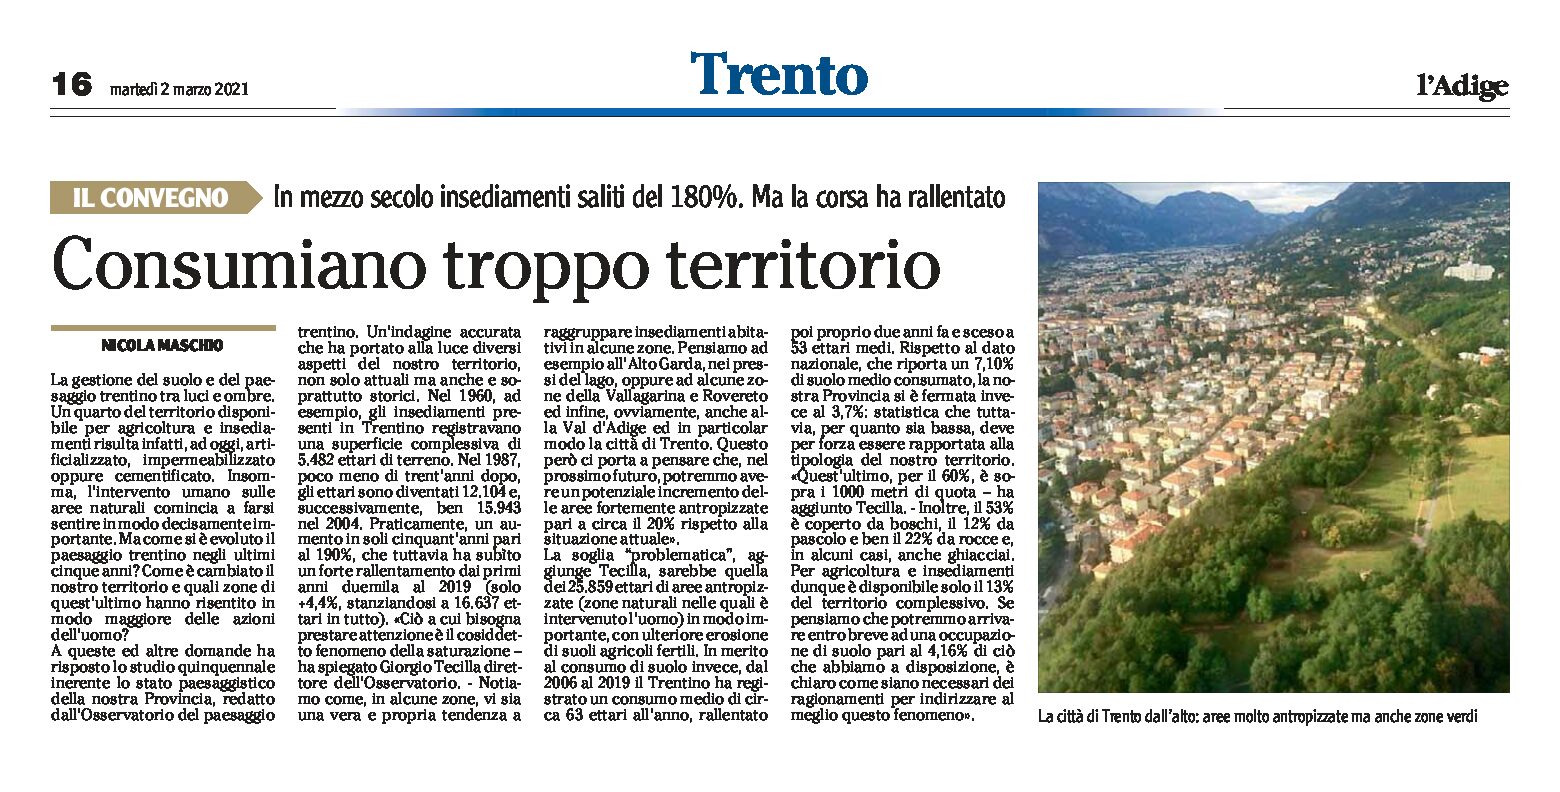 Trentino: dall’indagine dell’Osservatorio del paesaggio “consumiamo troppo territorio”